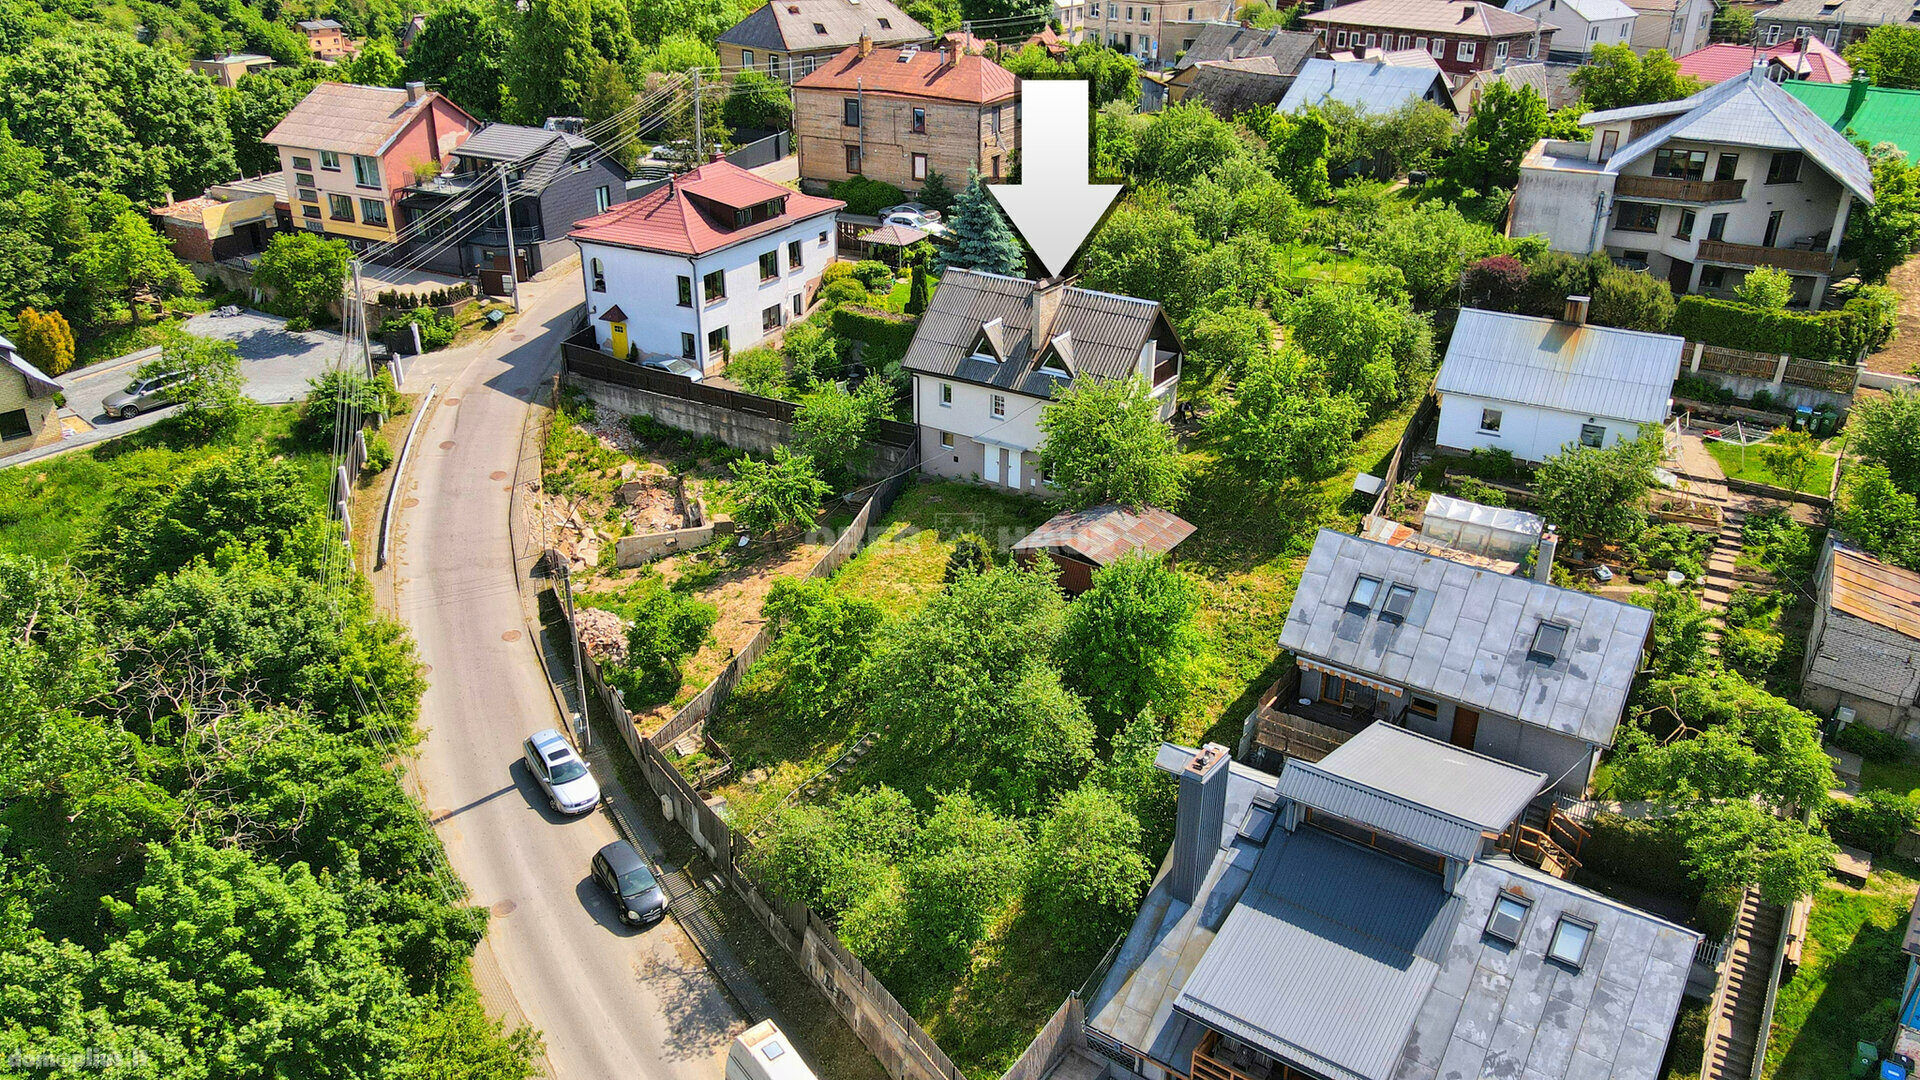 Parduodamas gyvenamasis namas Kaune, Žaliakalnyje